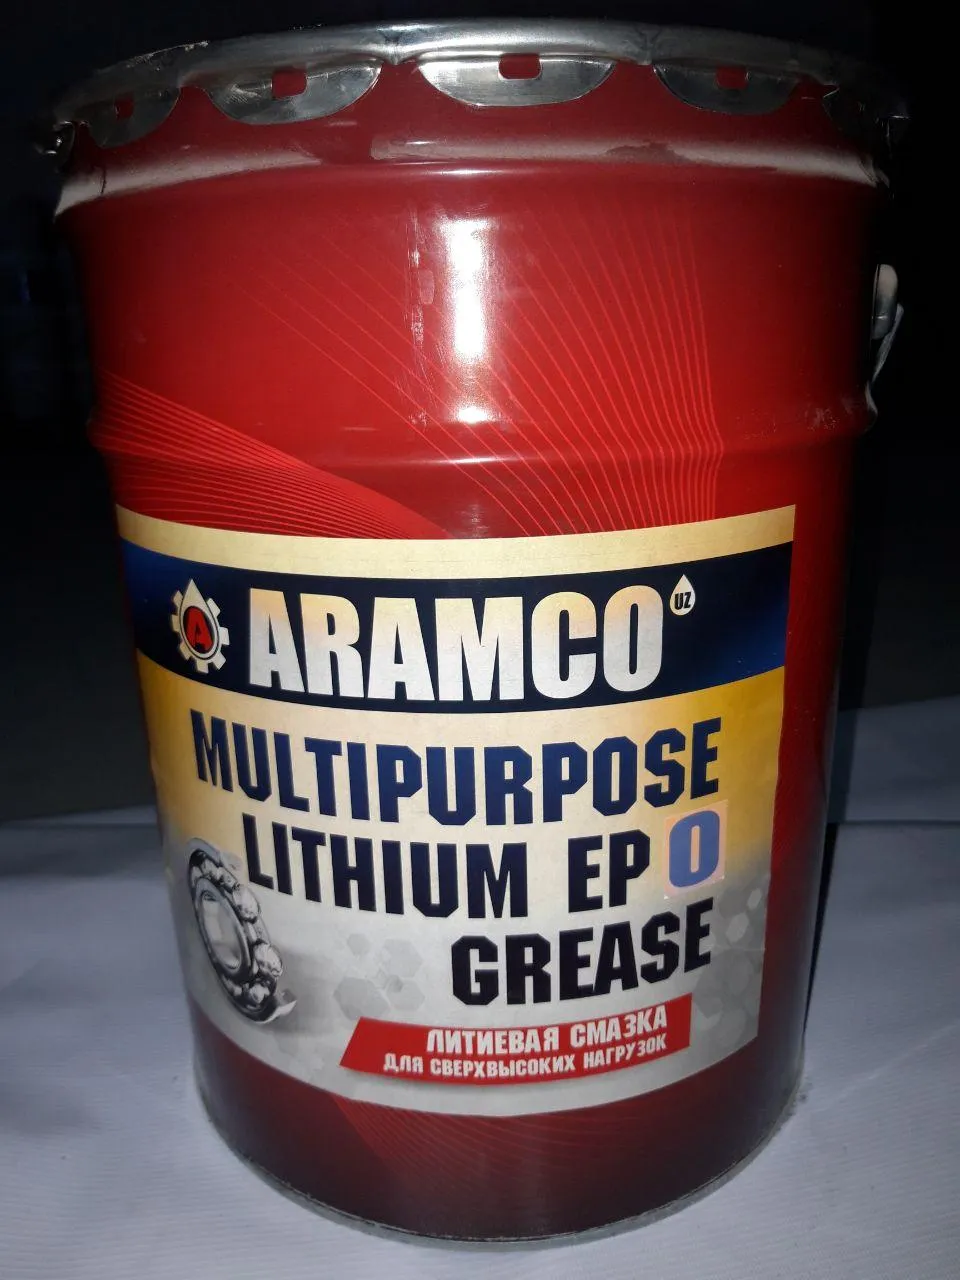 Aramco Multipurpose Lithium Grease EP 0#1